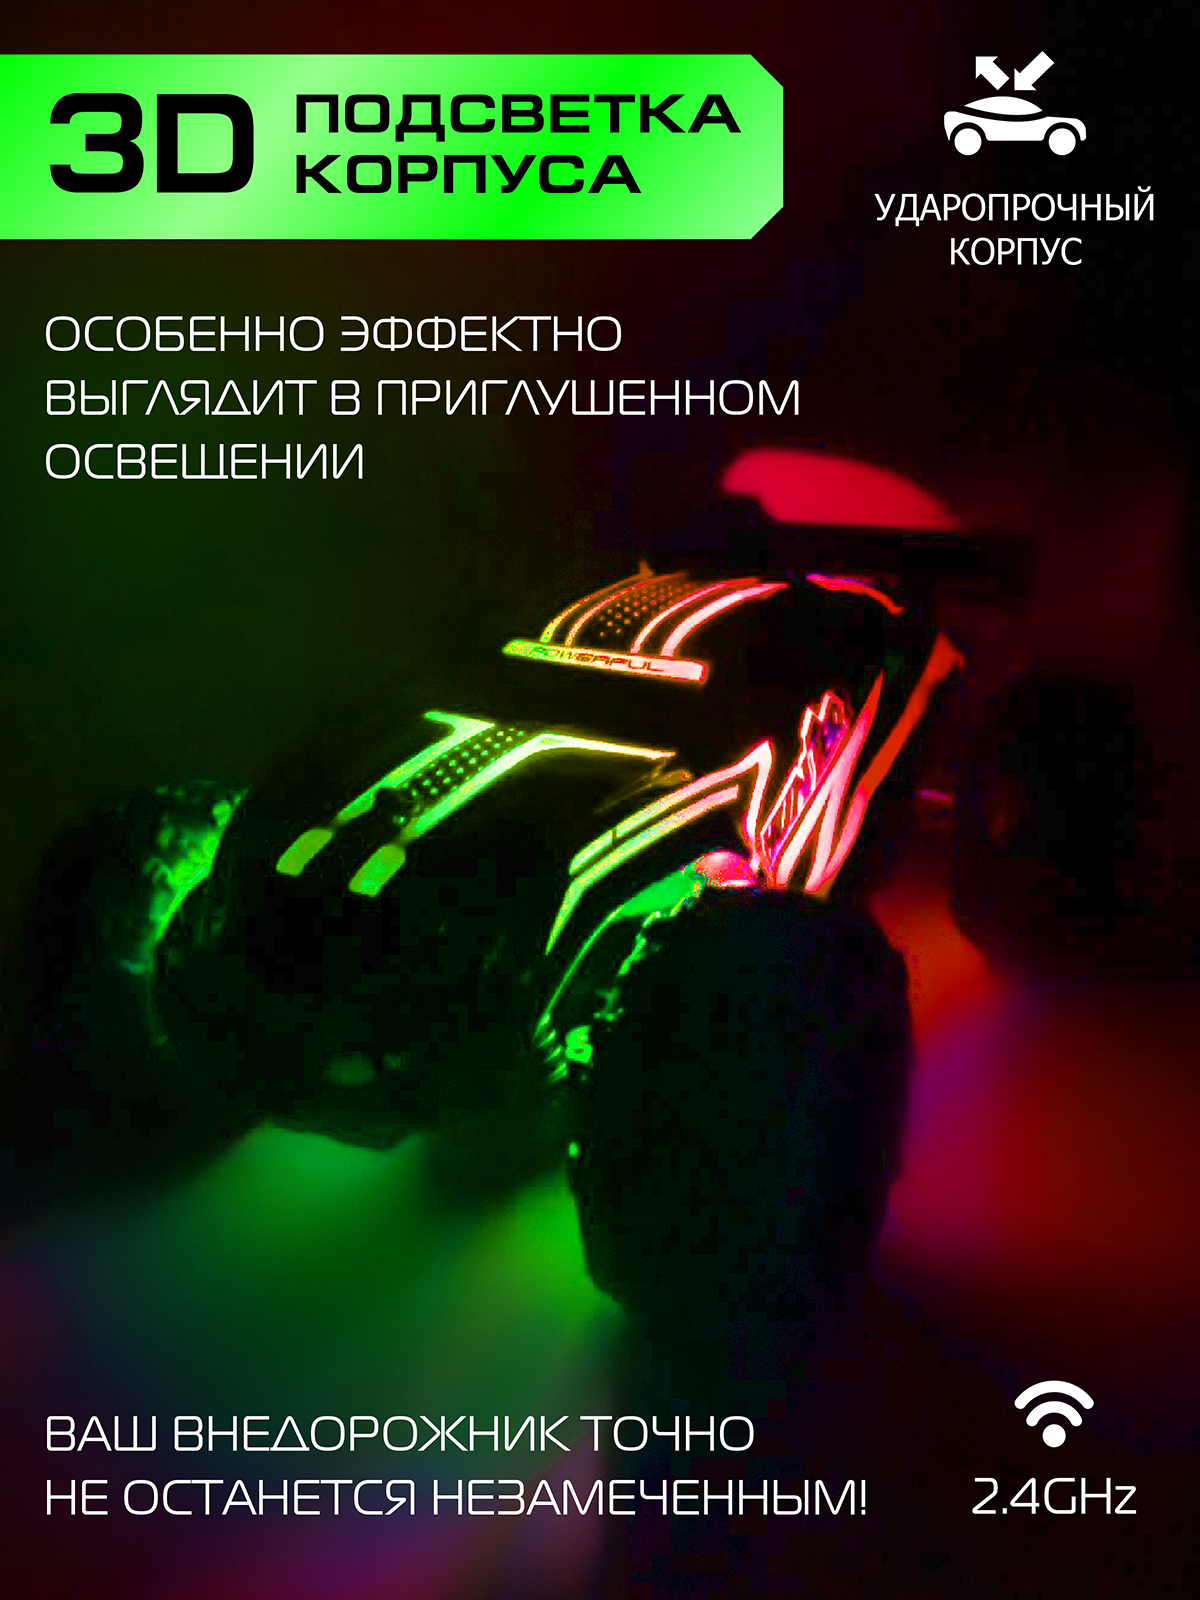 Игрушка на радиоуправлении AUTODRIVE Скоростной внедорожник с подсветкой скорость до 15 км/ч цвет зеленый - фото 3